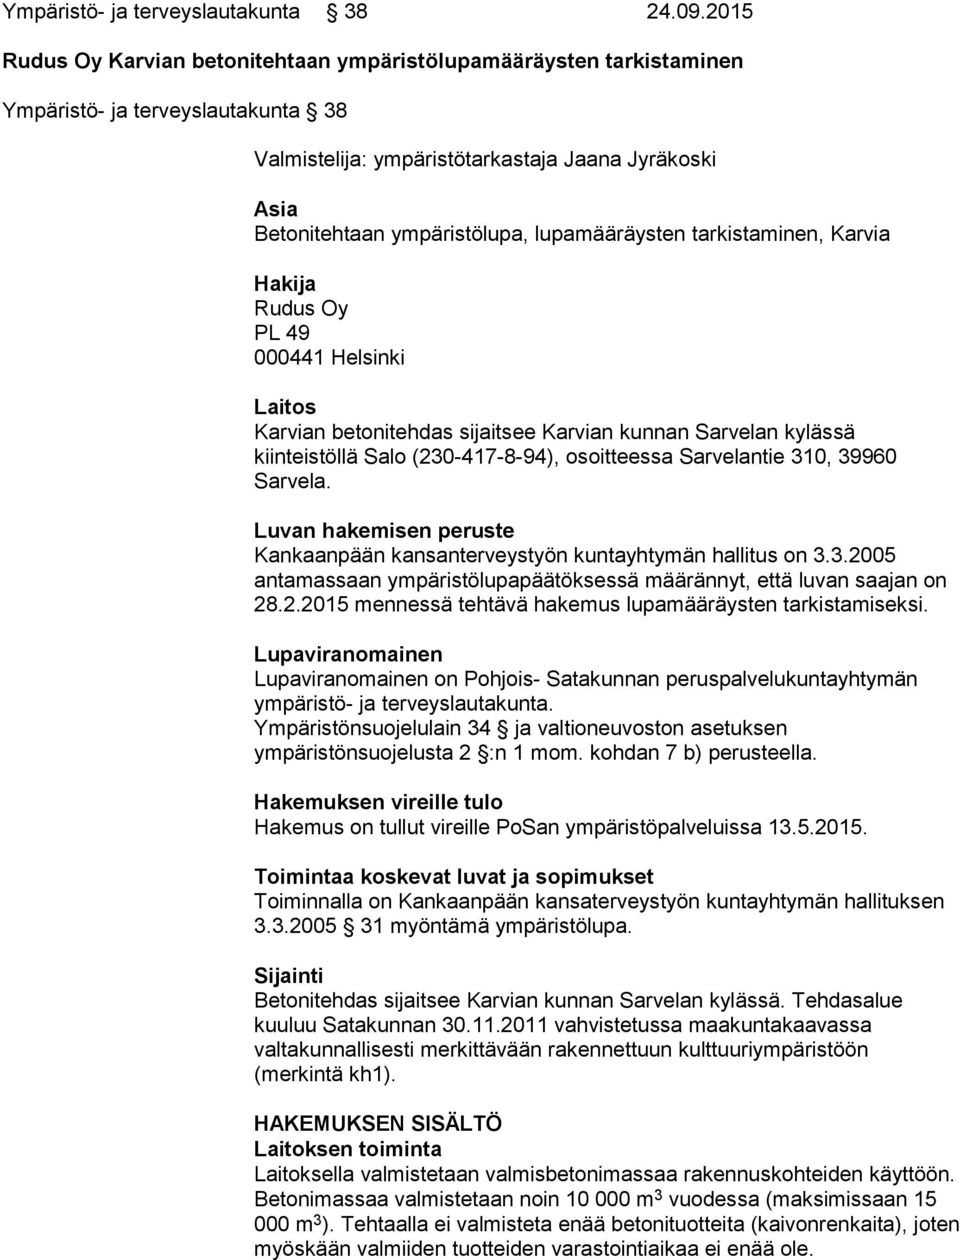 lupamääräysten tarkistaminen, Karvia Hakija Rudus Oy PL 49 000441 Helsinki Laitos Karvian betonitehdas sijaitsee Karvian kunnan Sarvelan kylässä kiinteistöllä Salo (230-417-8-94), osoitteessa